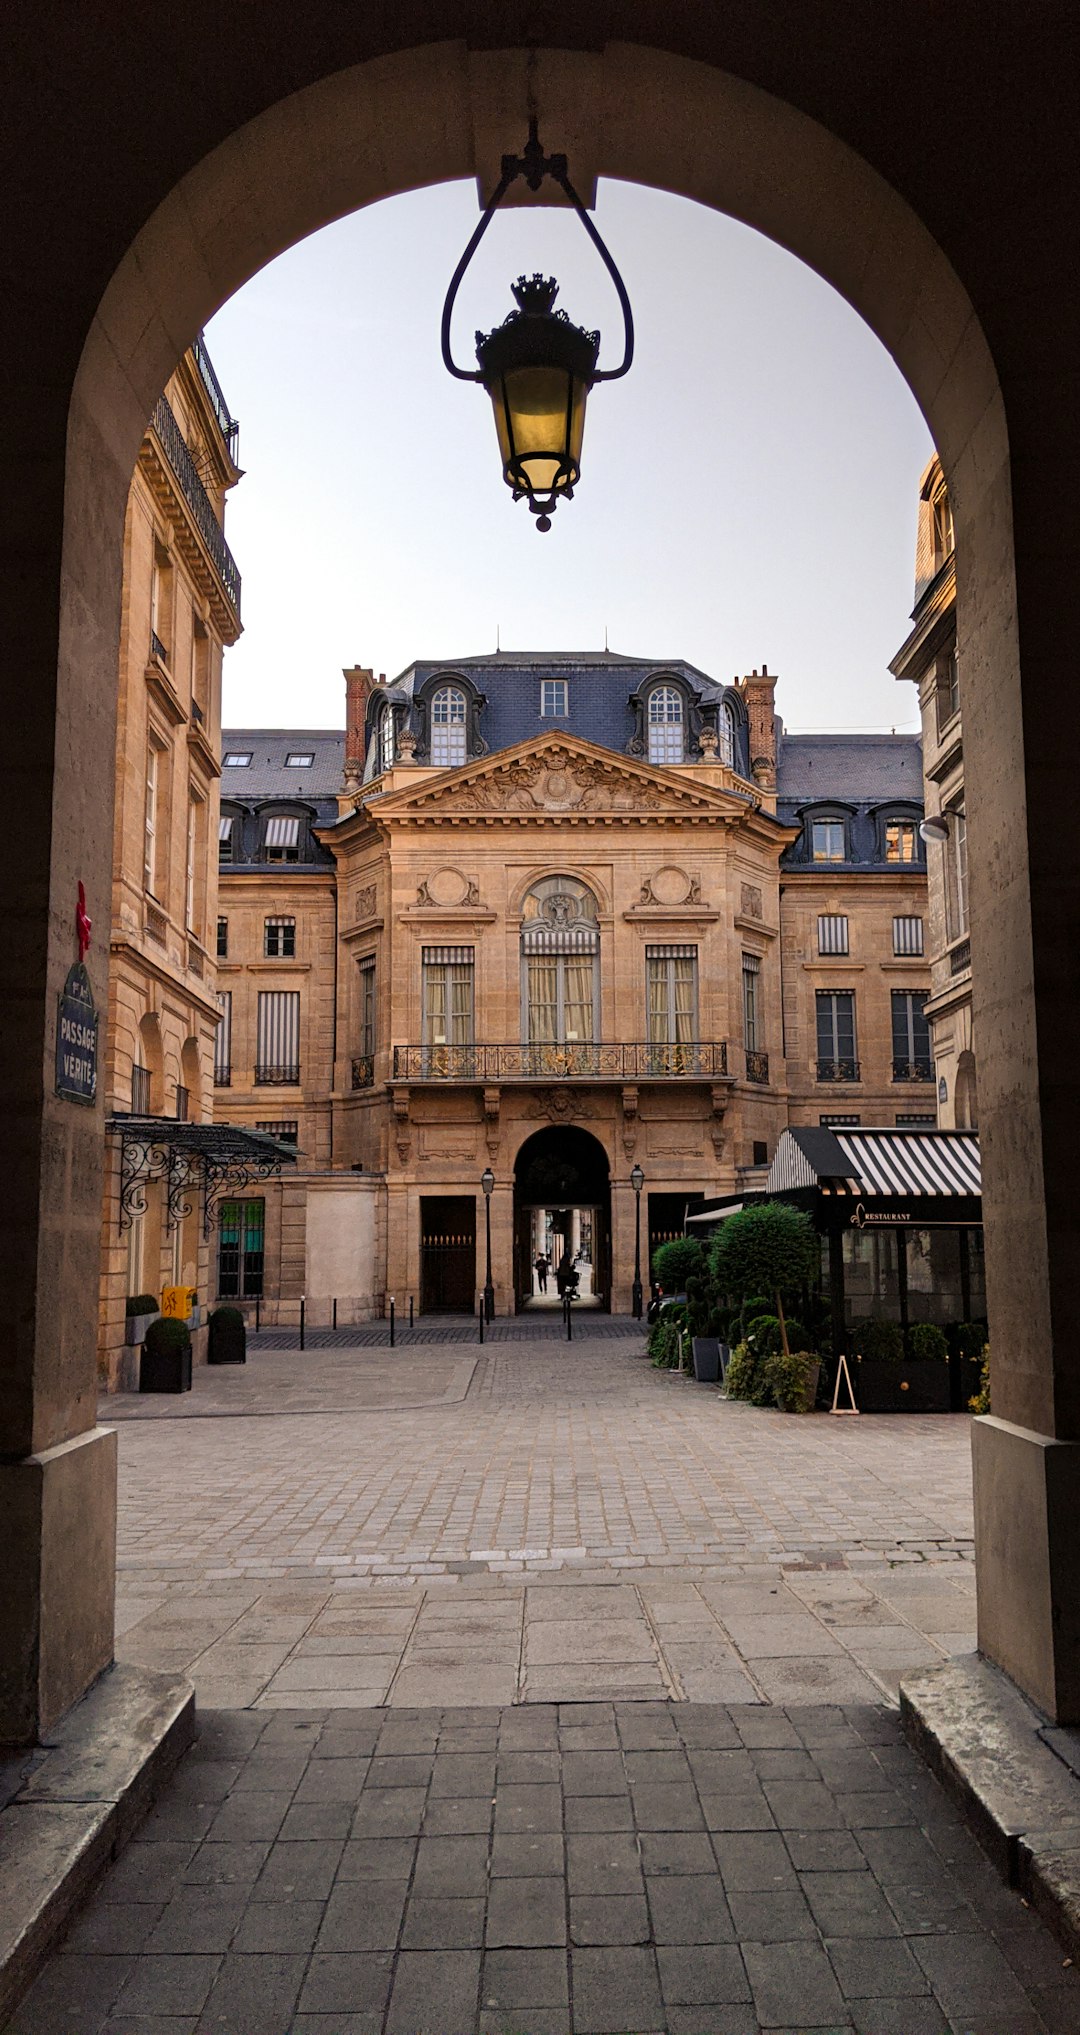 Town photo spot 1 Galerie des Proues Hôtel de Ville